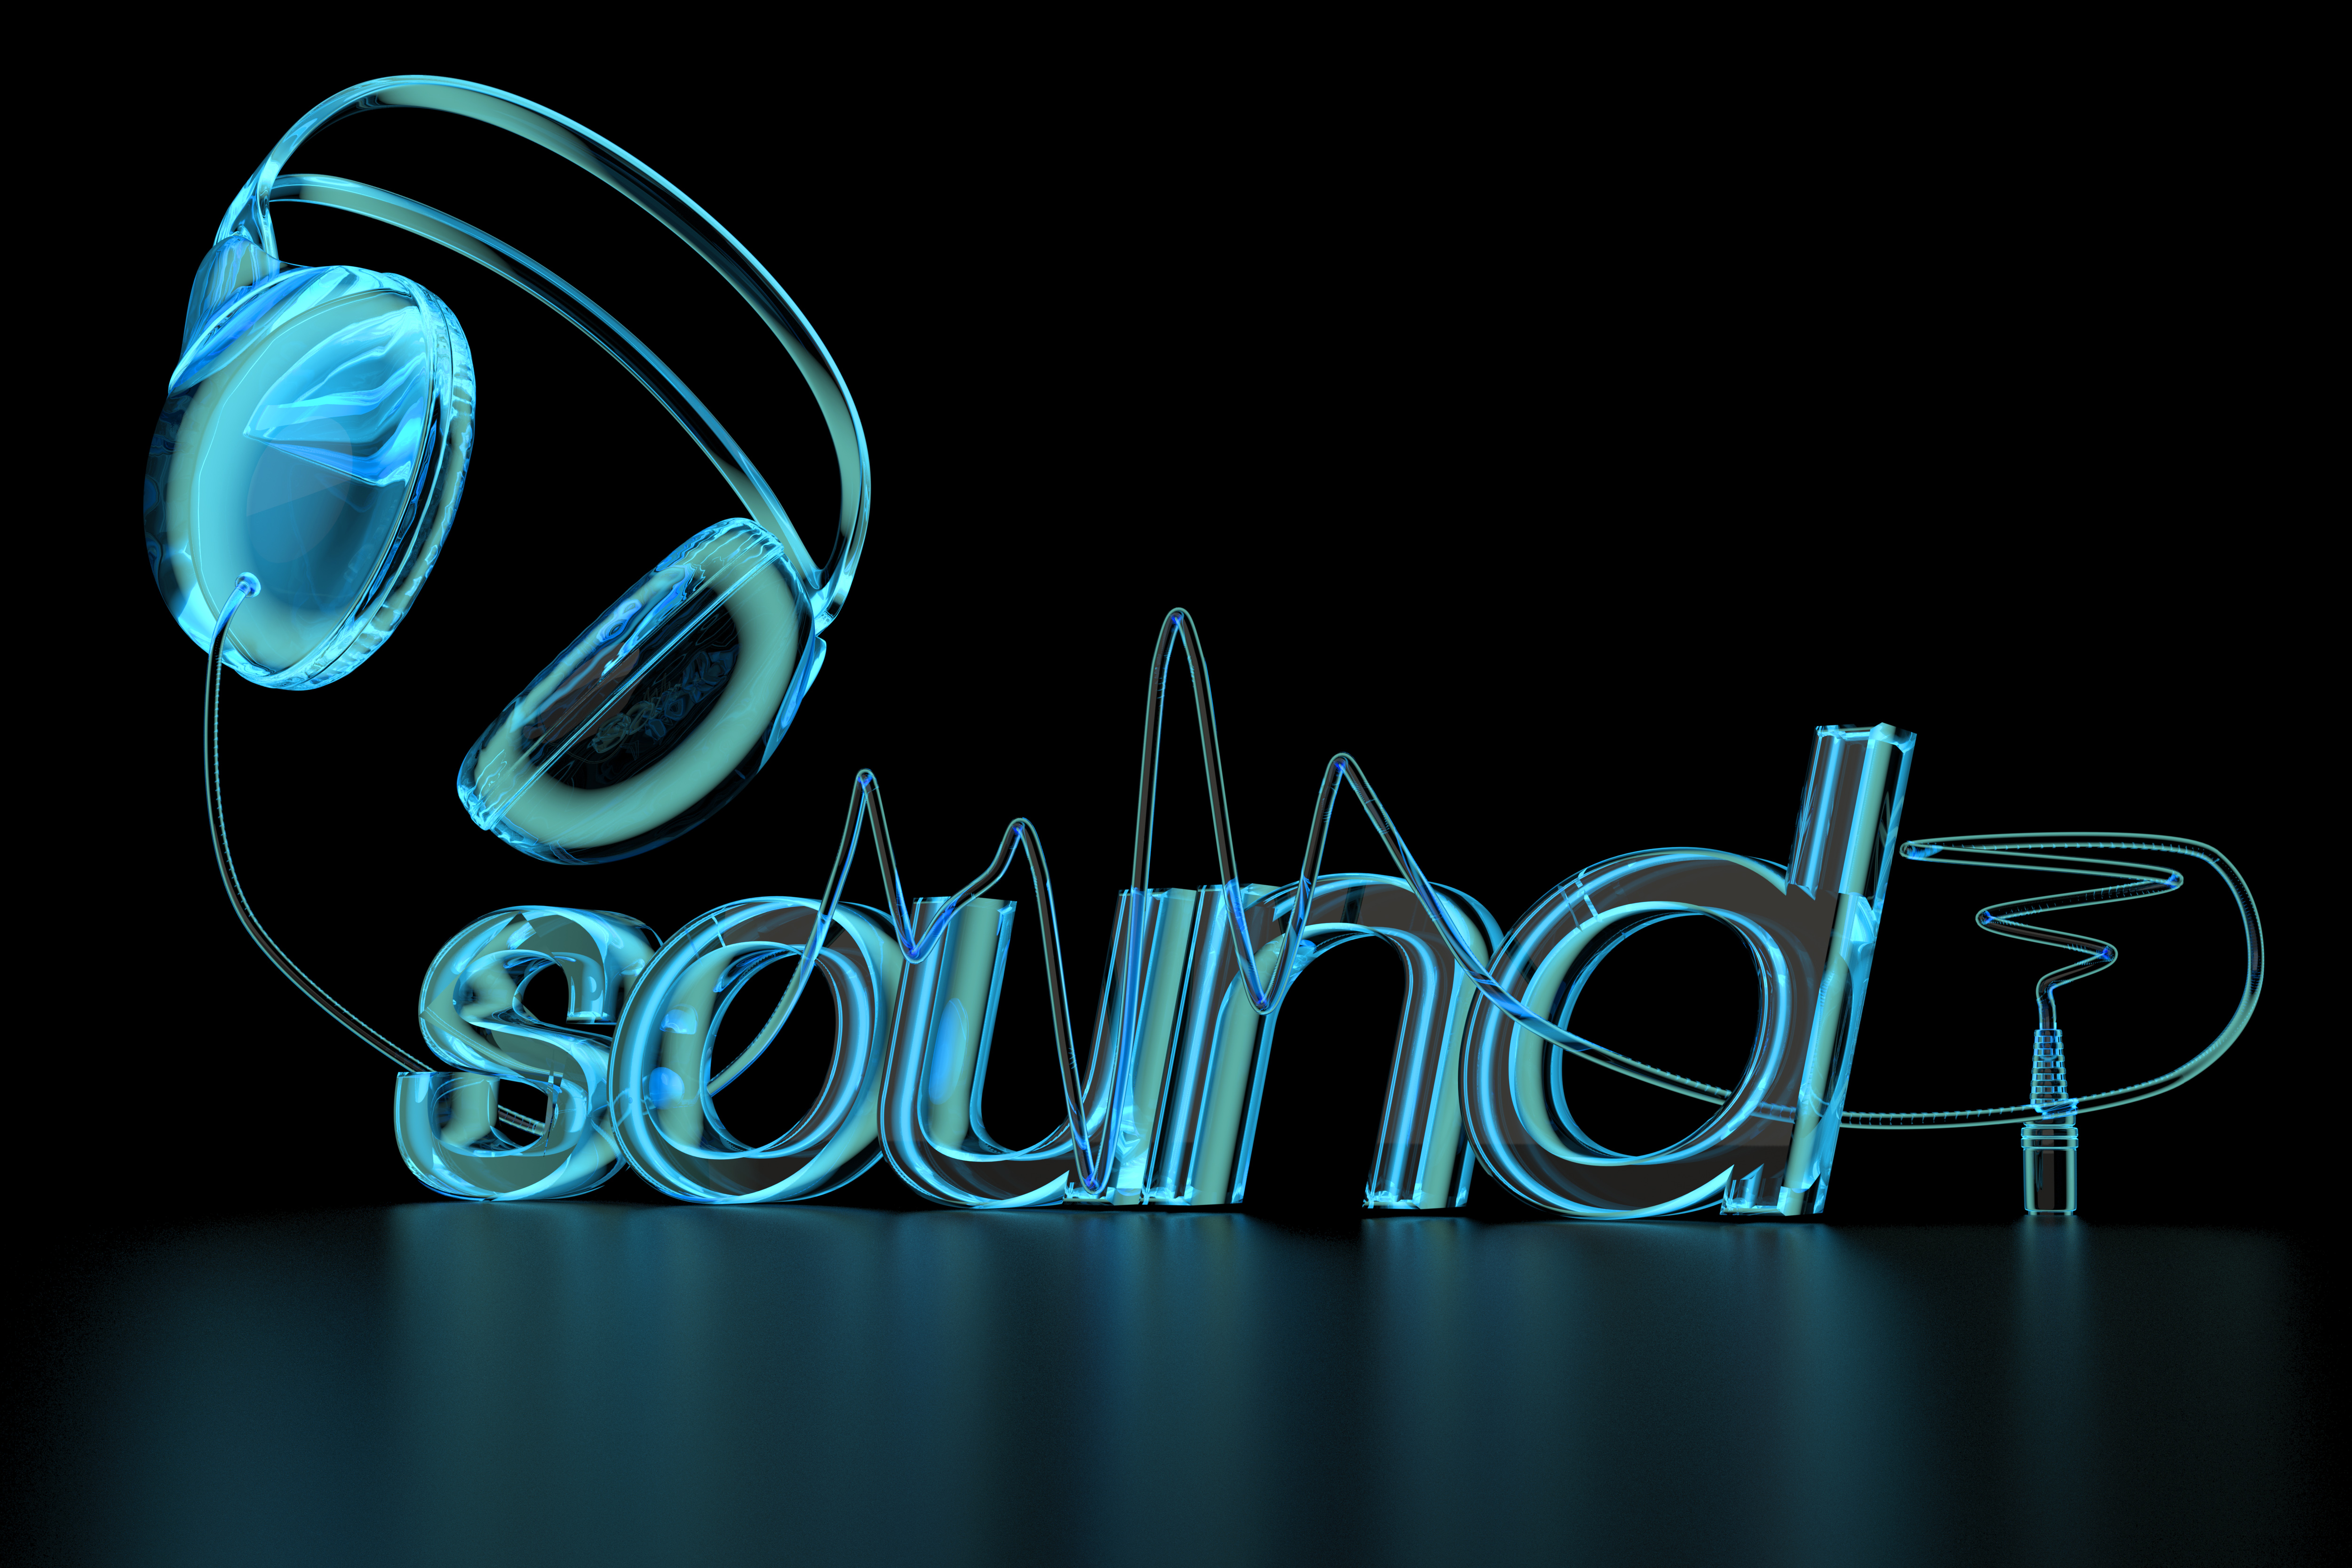 8D audio vs. Spatial Sound